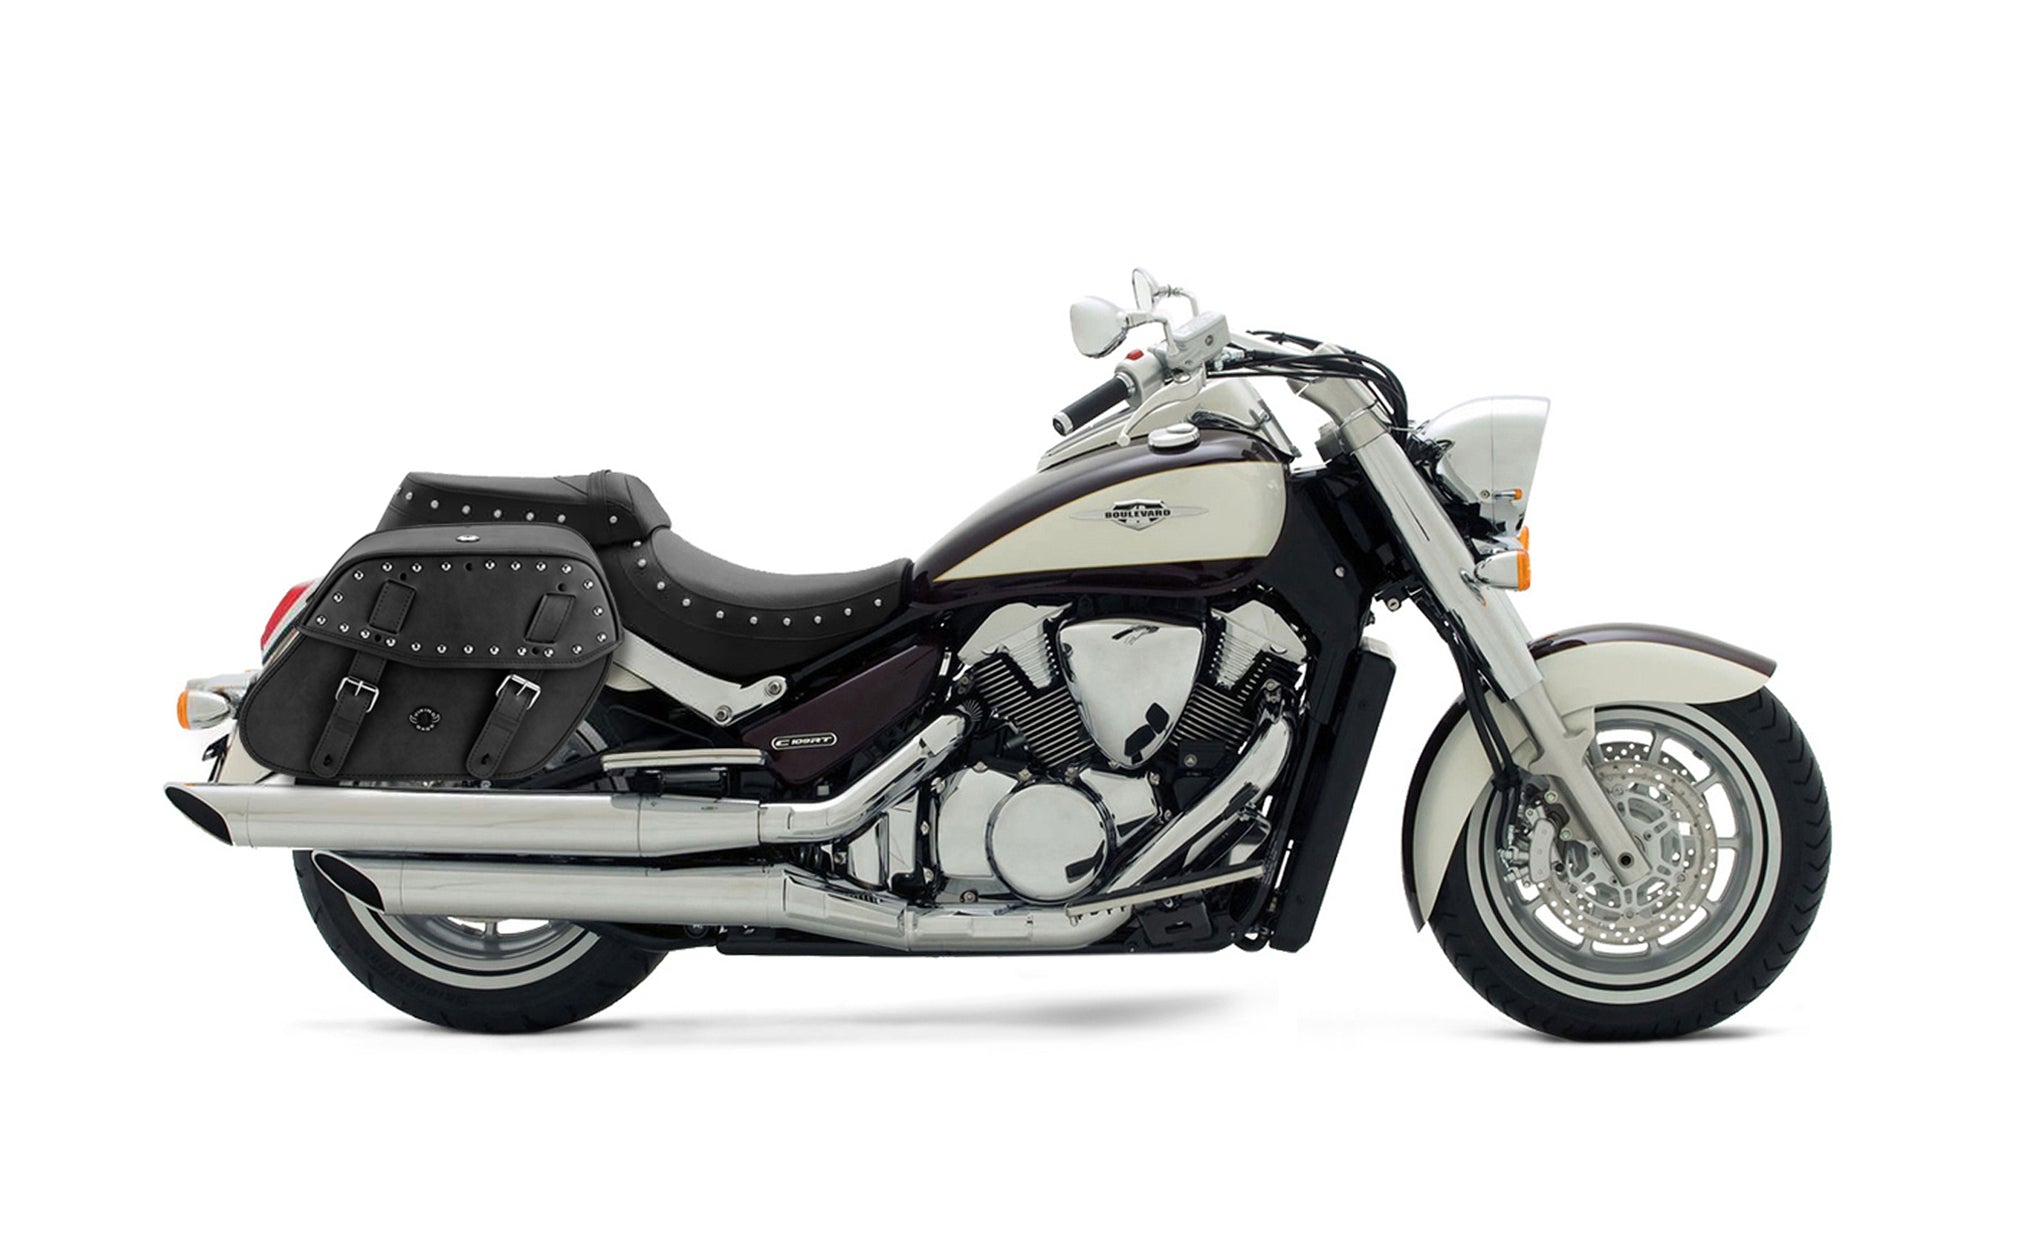 Viking Odin Large Suzuki Boulevard C109 Leather Studded Motorcycle Saddlebags on Bike Photo @expand